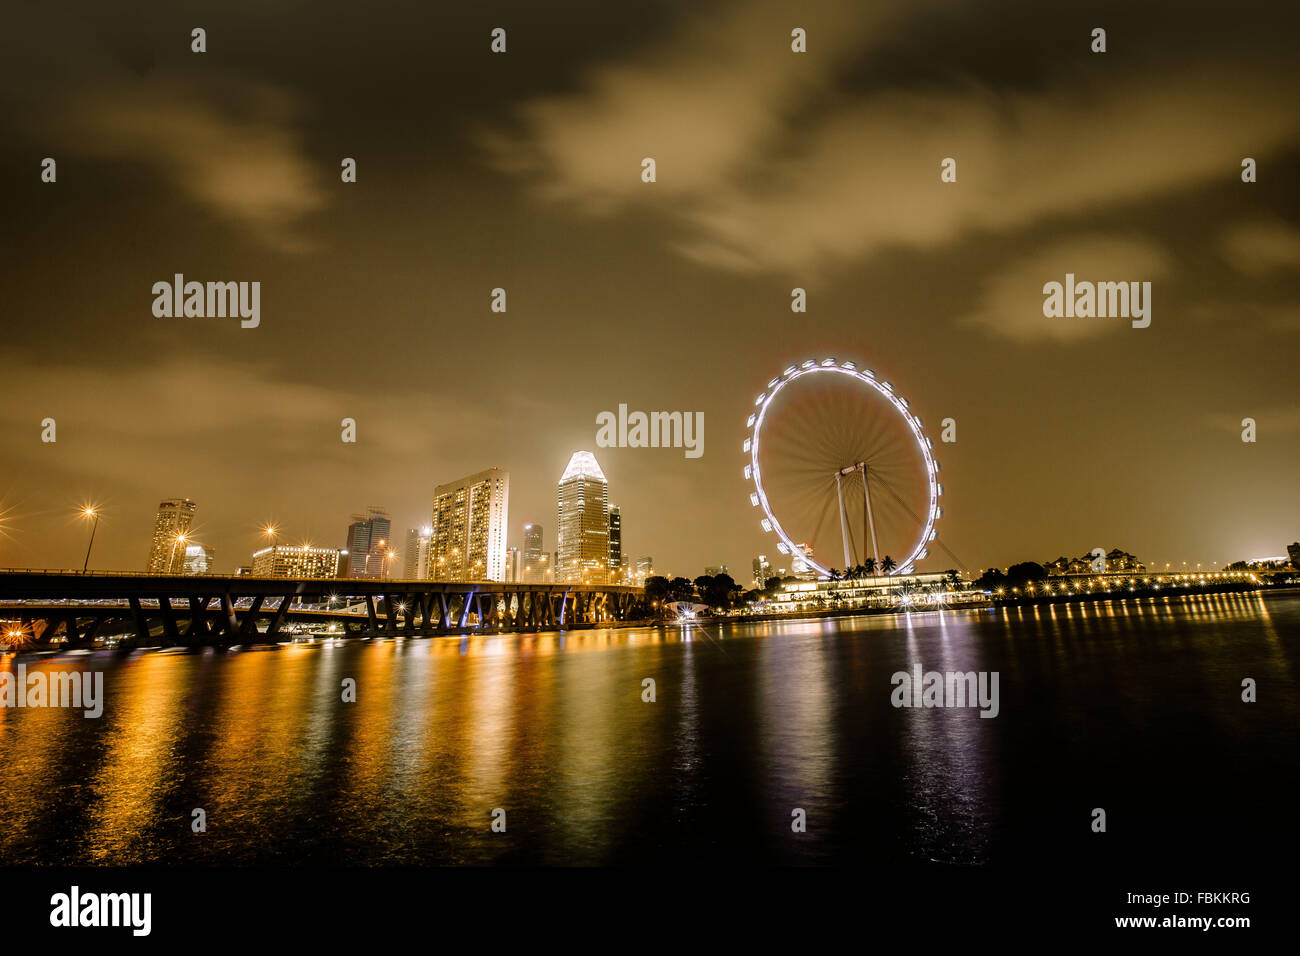 Ferry wheel, Singapore Stock Photo